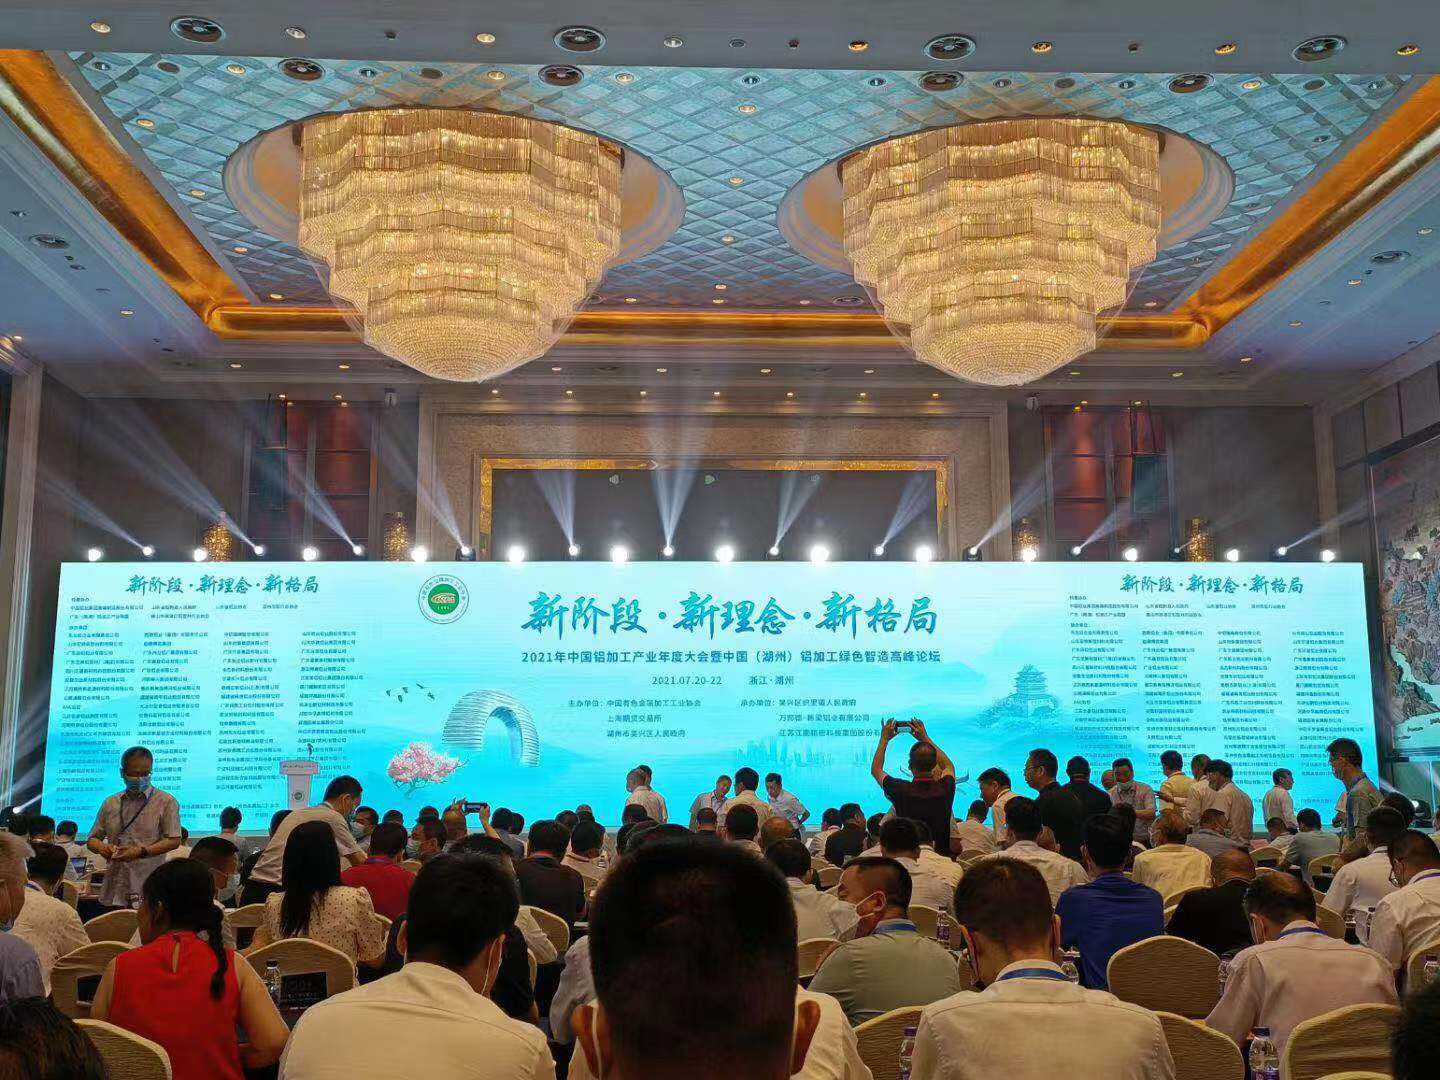 思肯飞科技 ▏应邀参加2021年中国铝加工产业年度大会暨中国（湖州）铝加工绿色制造高峰论坛